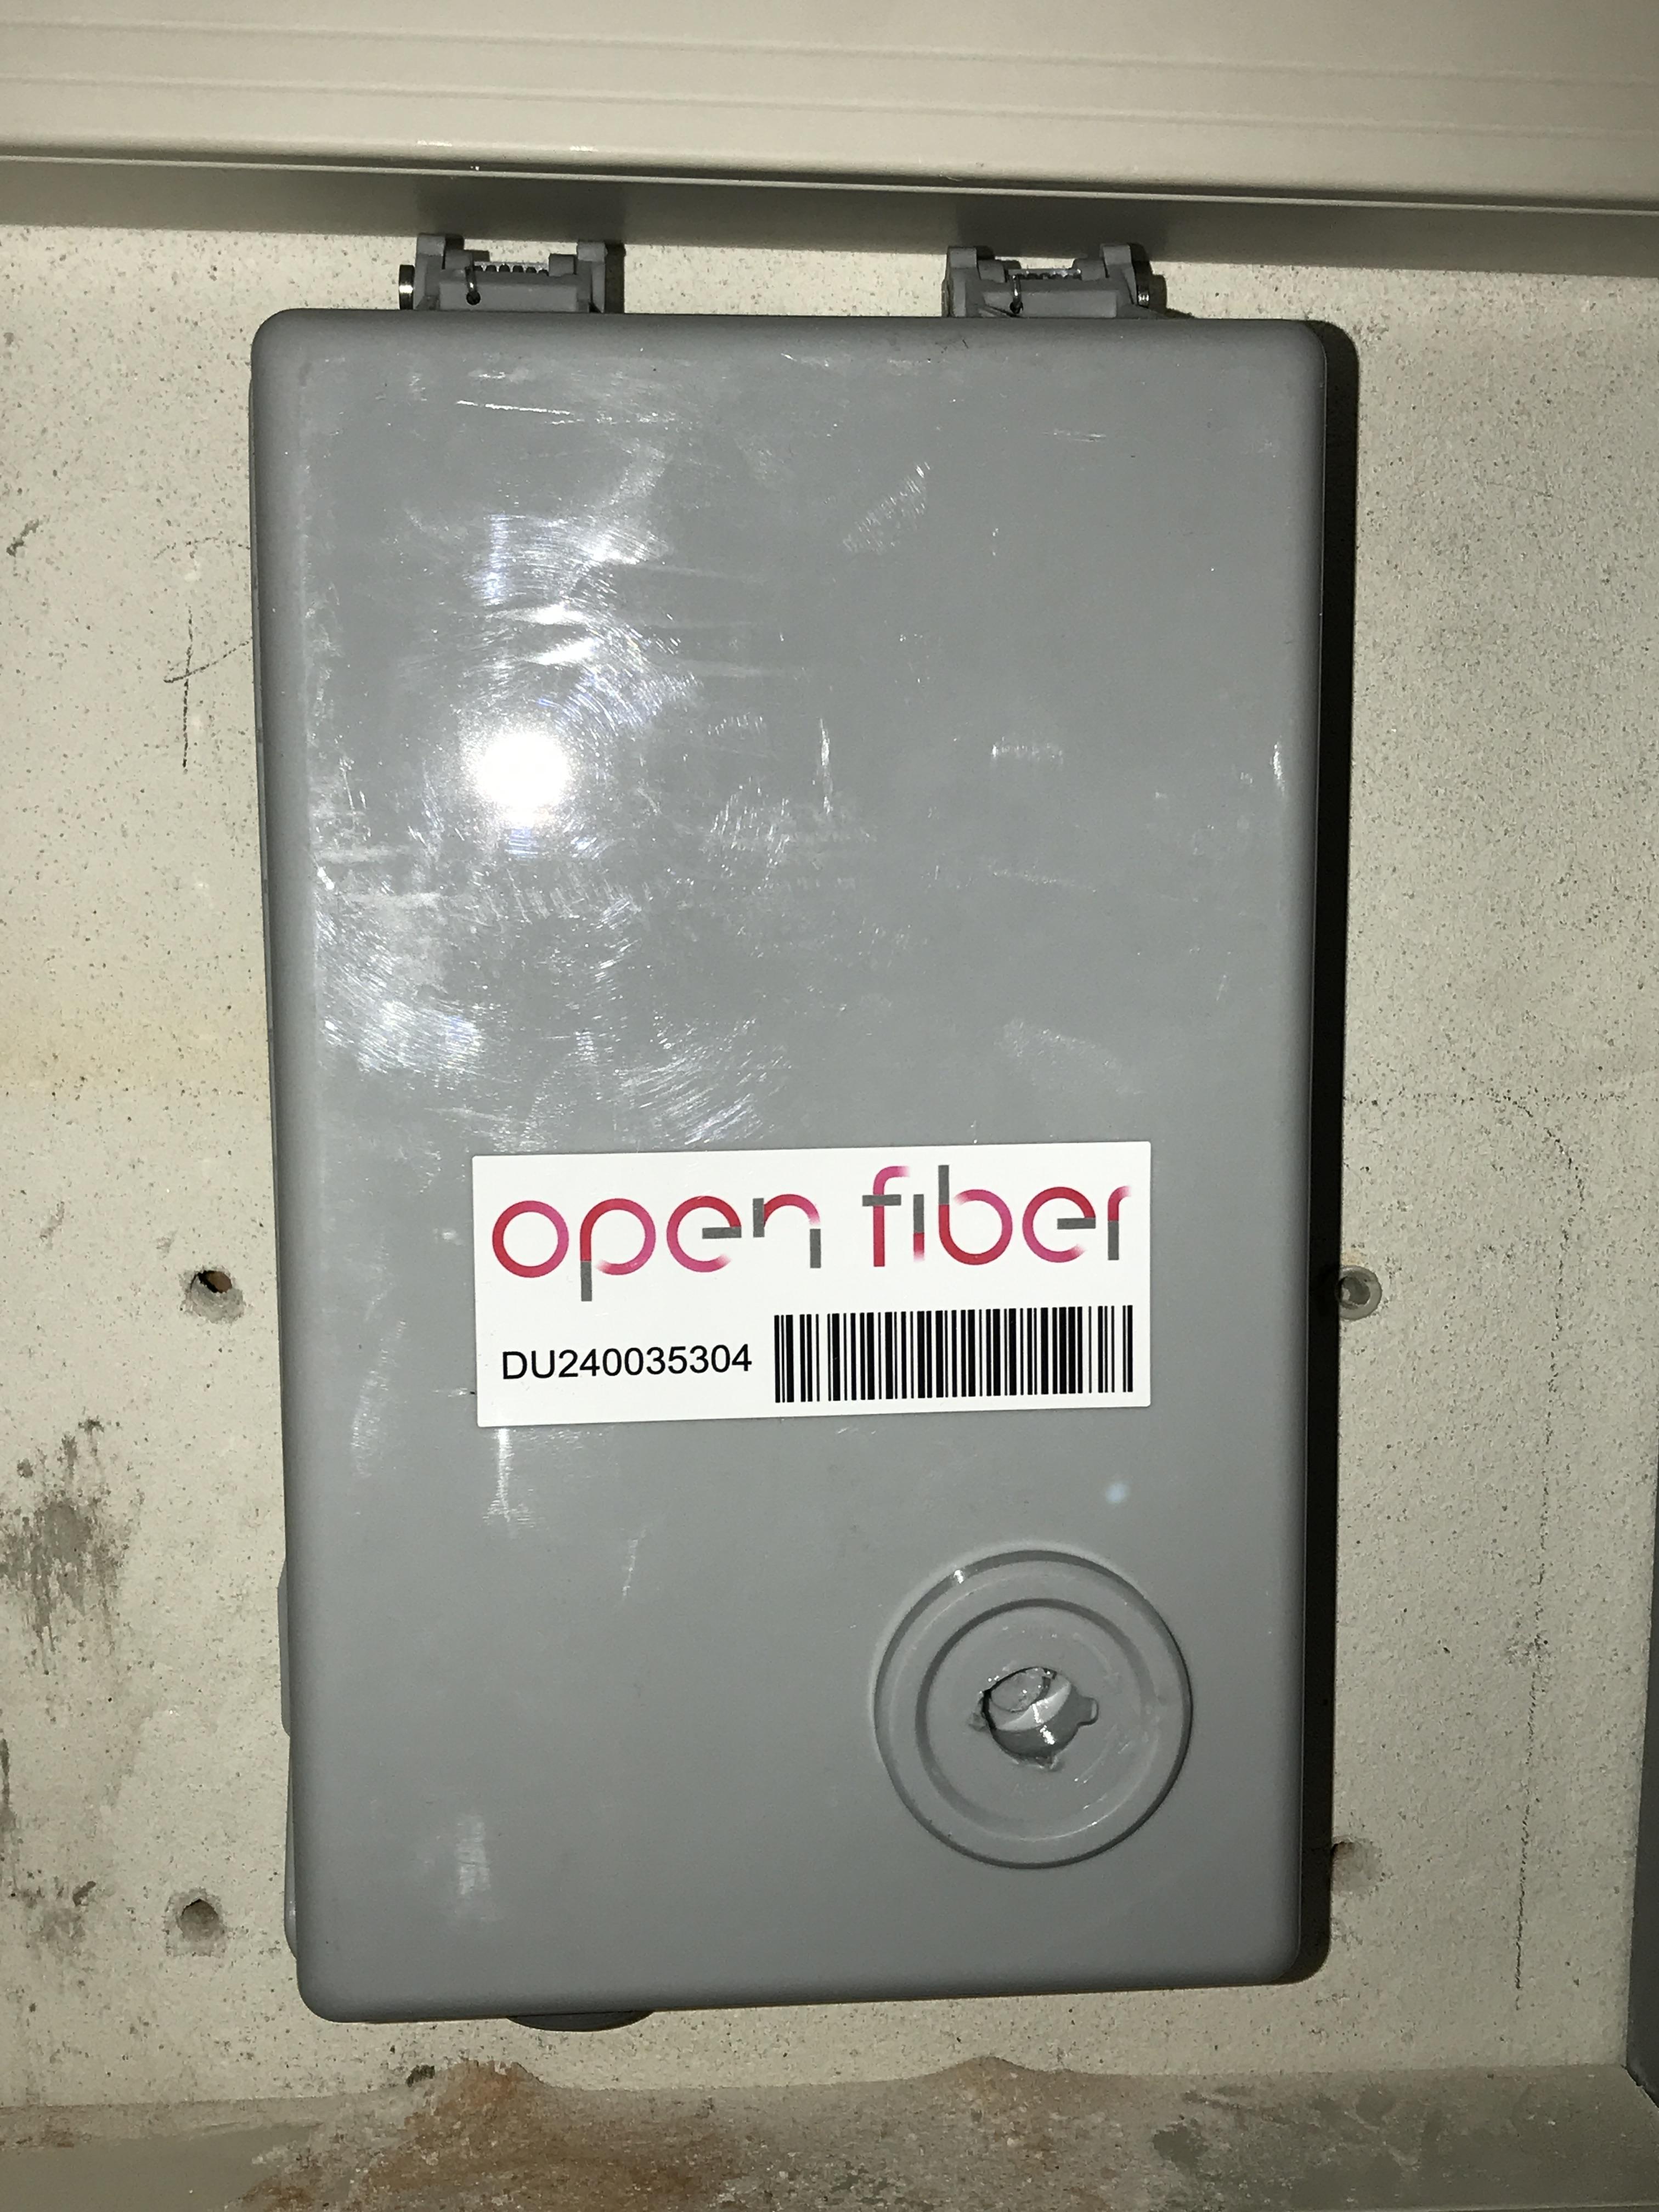 Scatola di un PTE con l'etichetta Open Fiber